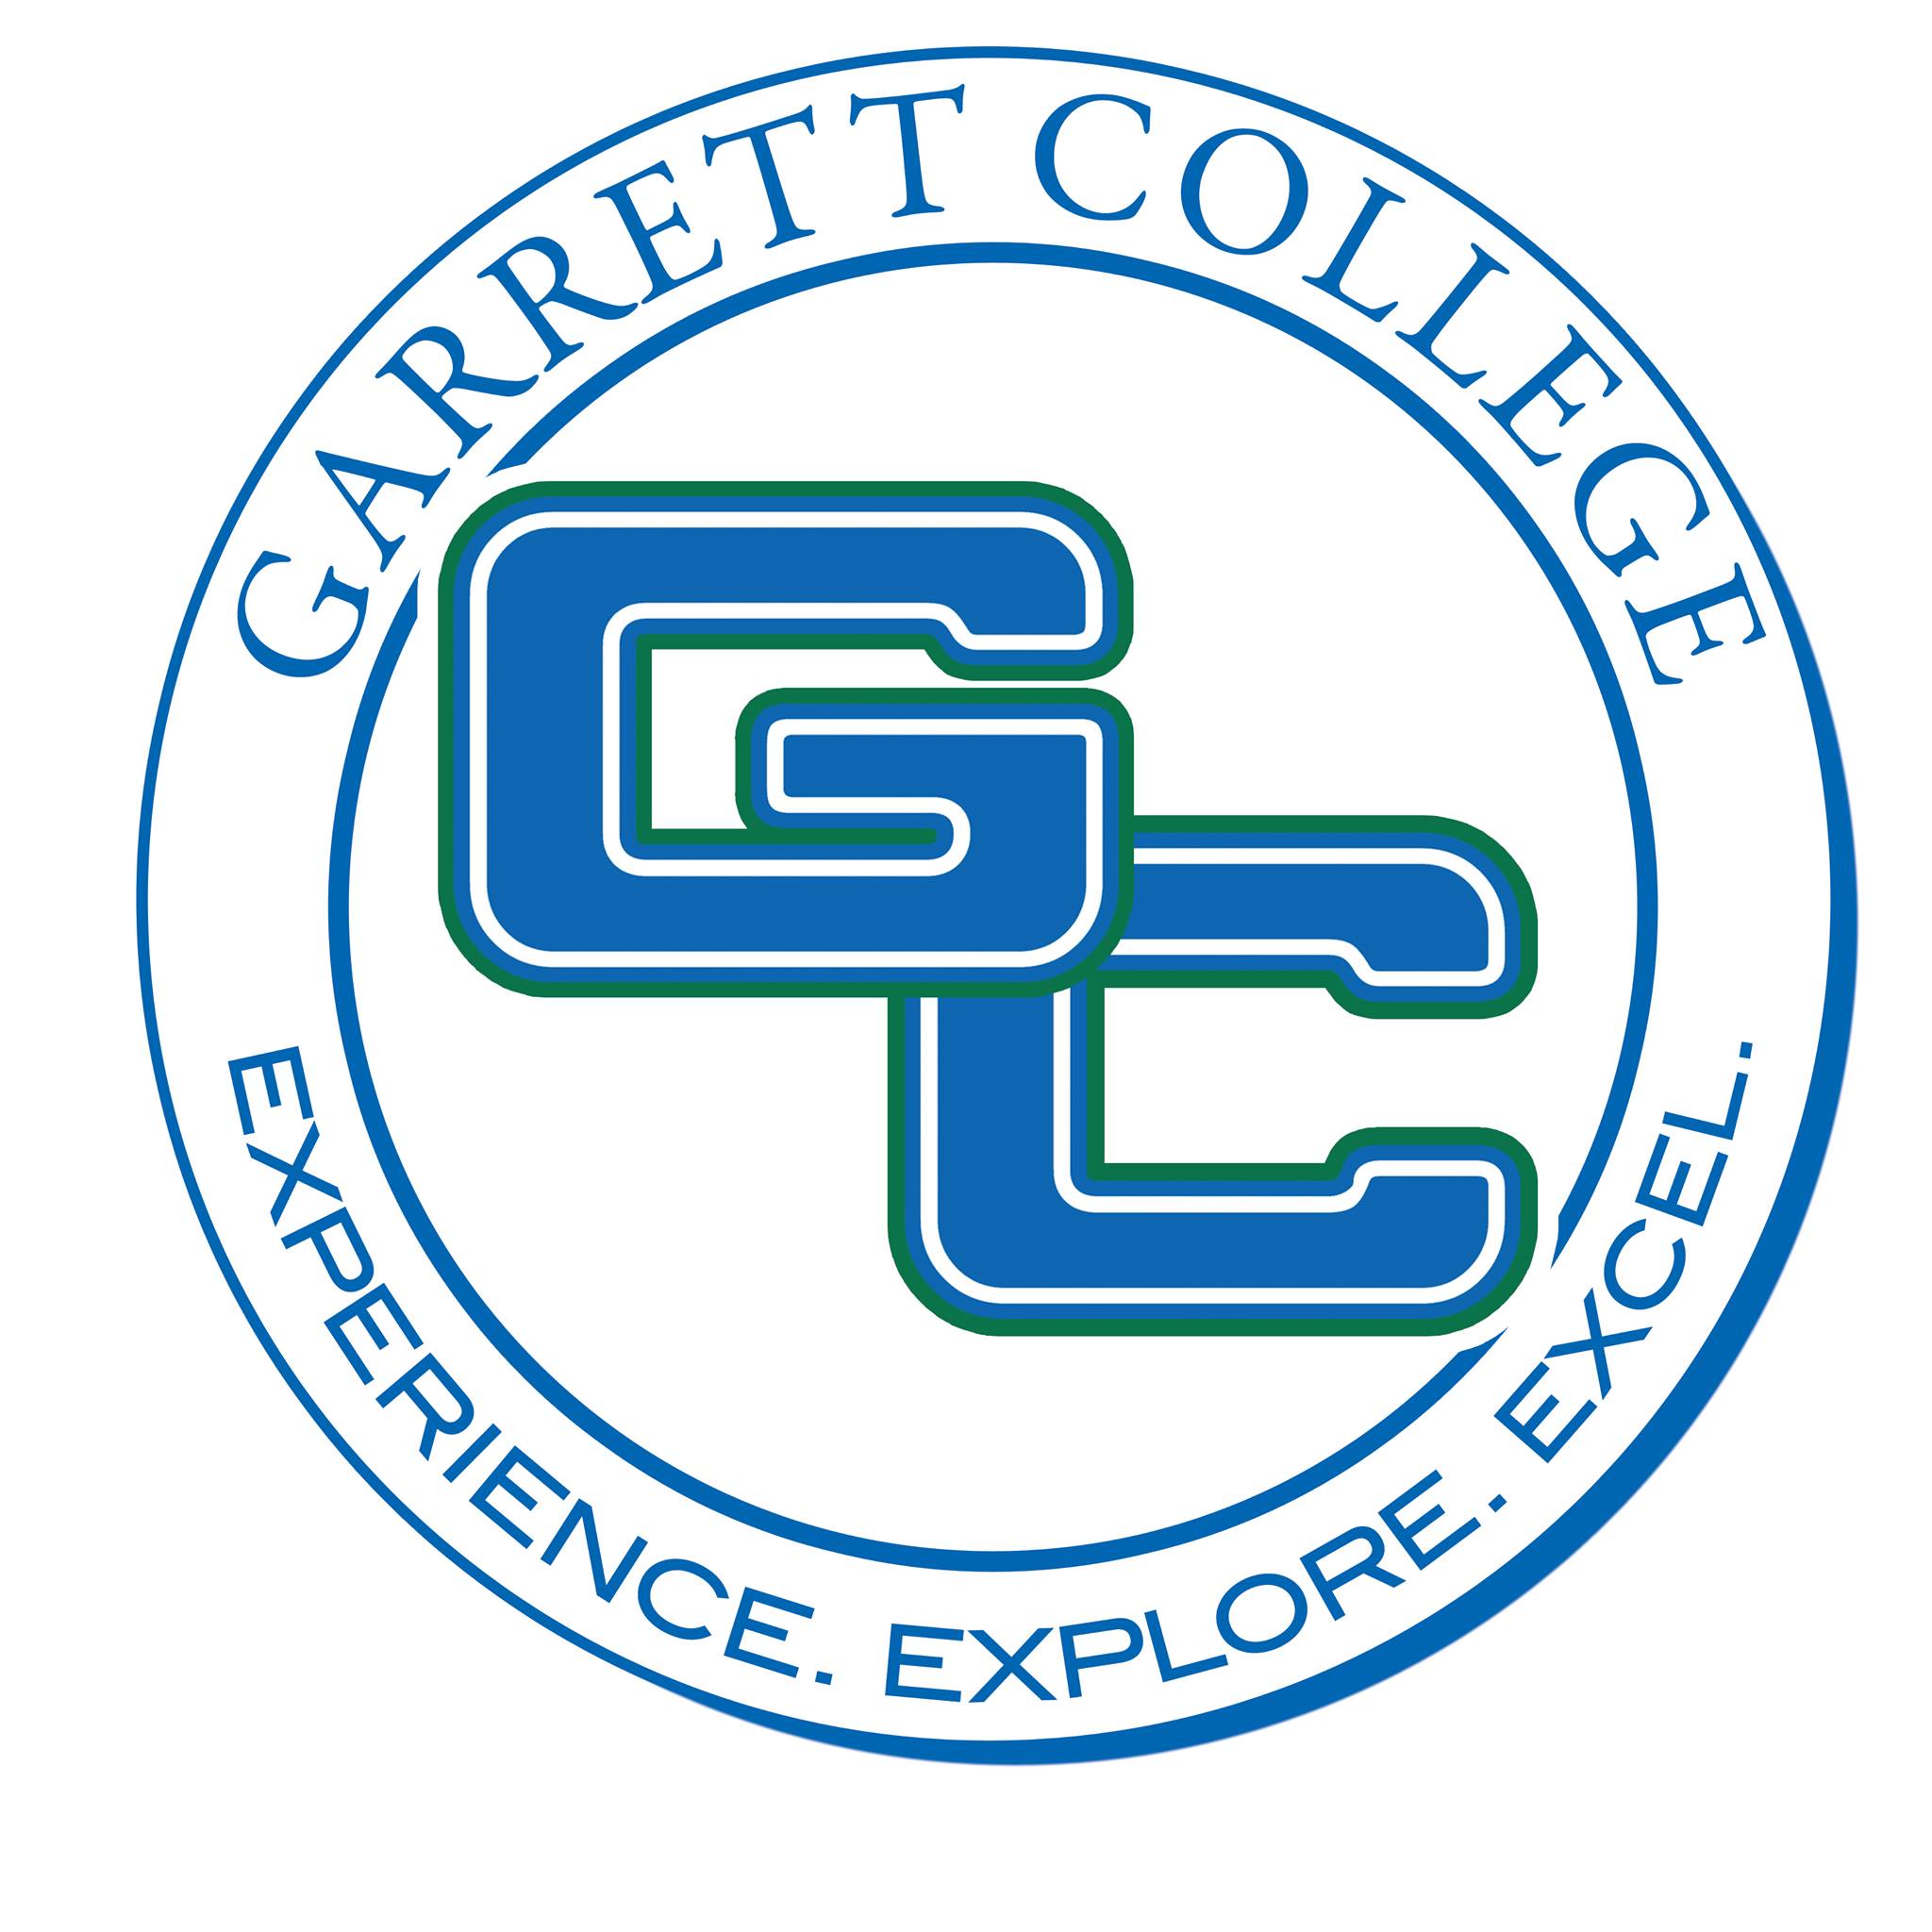 Garrett College<br />
